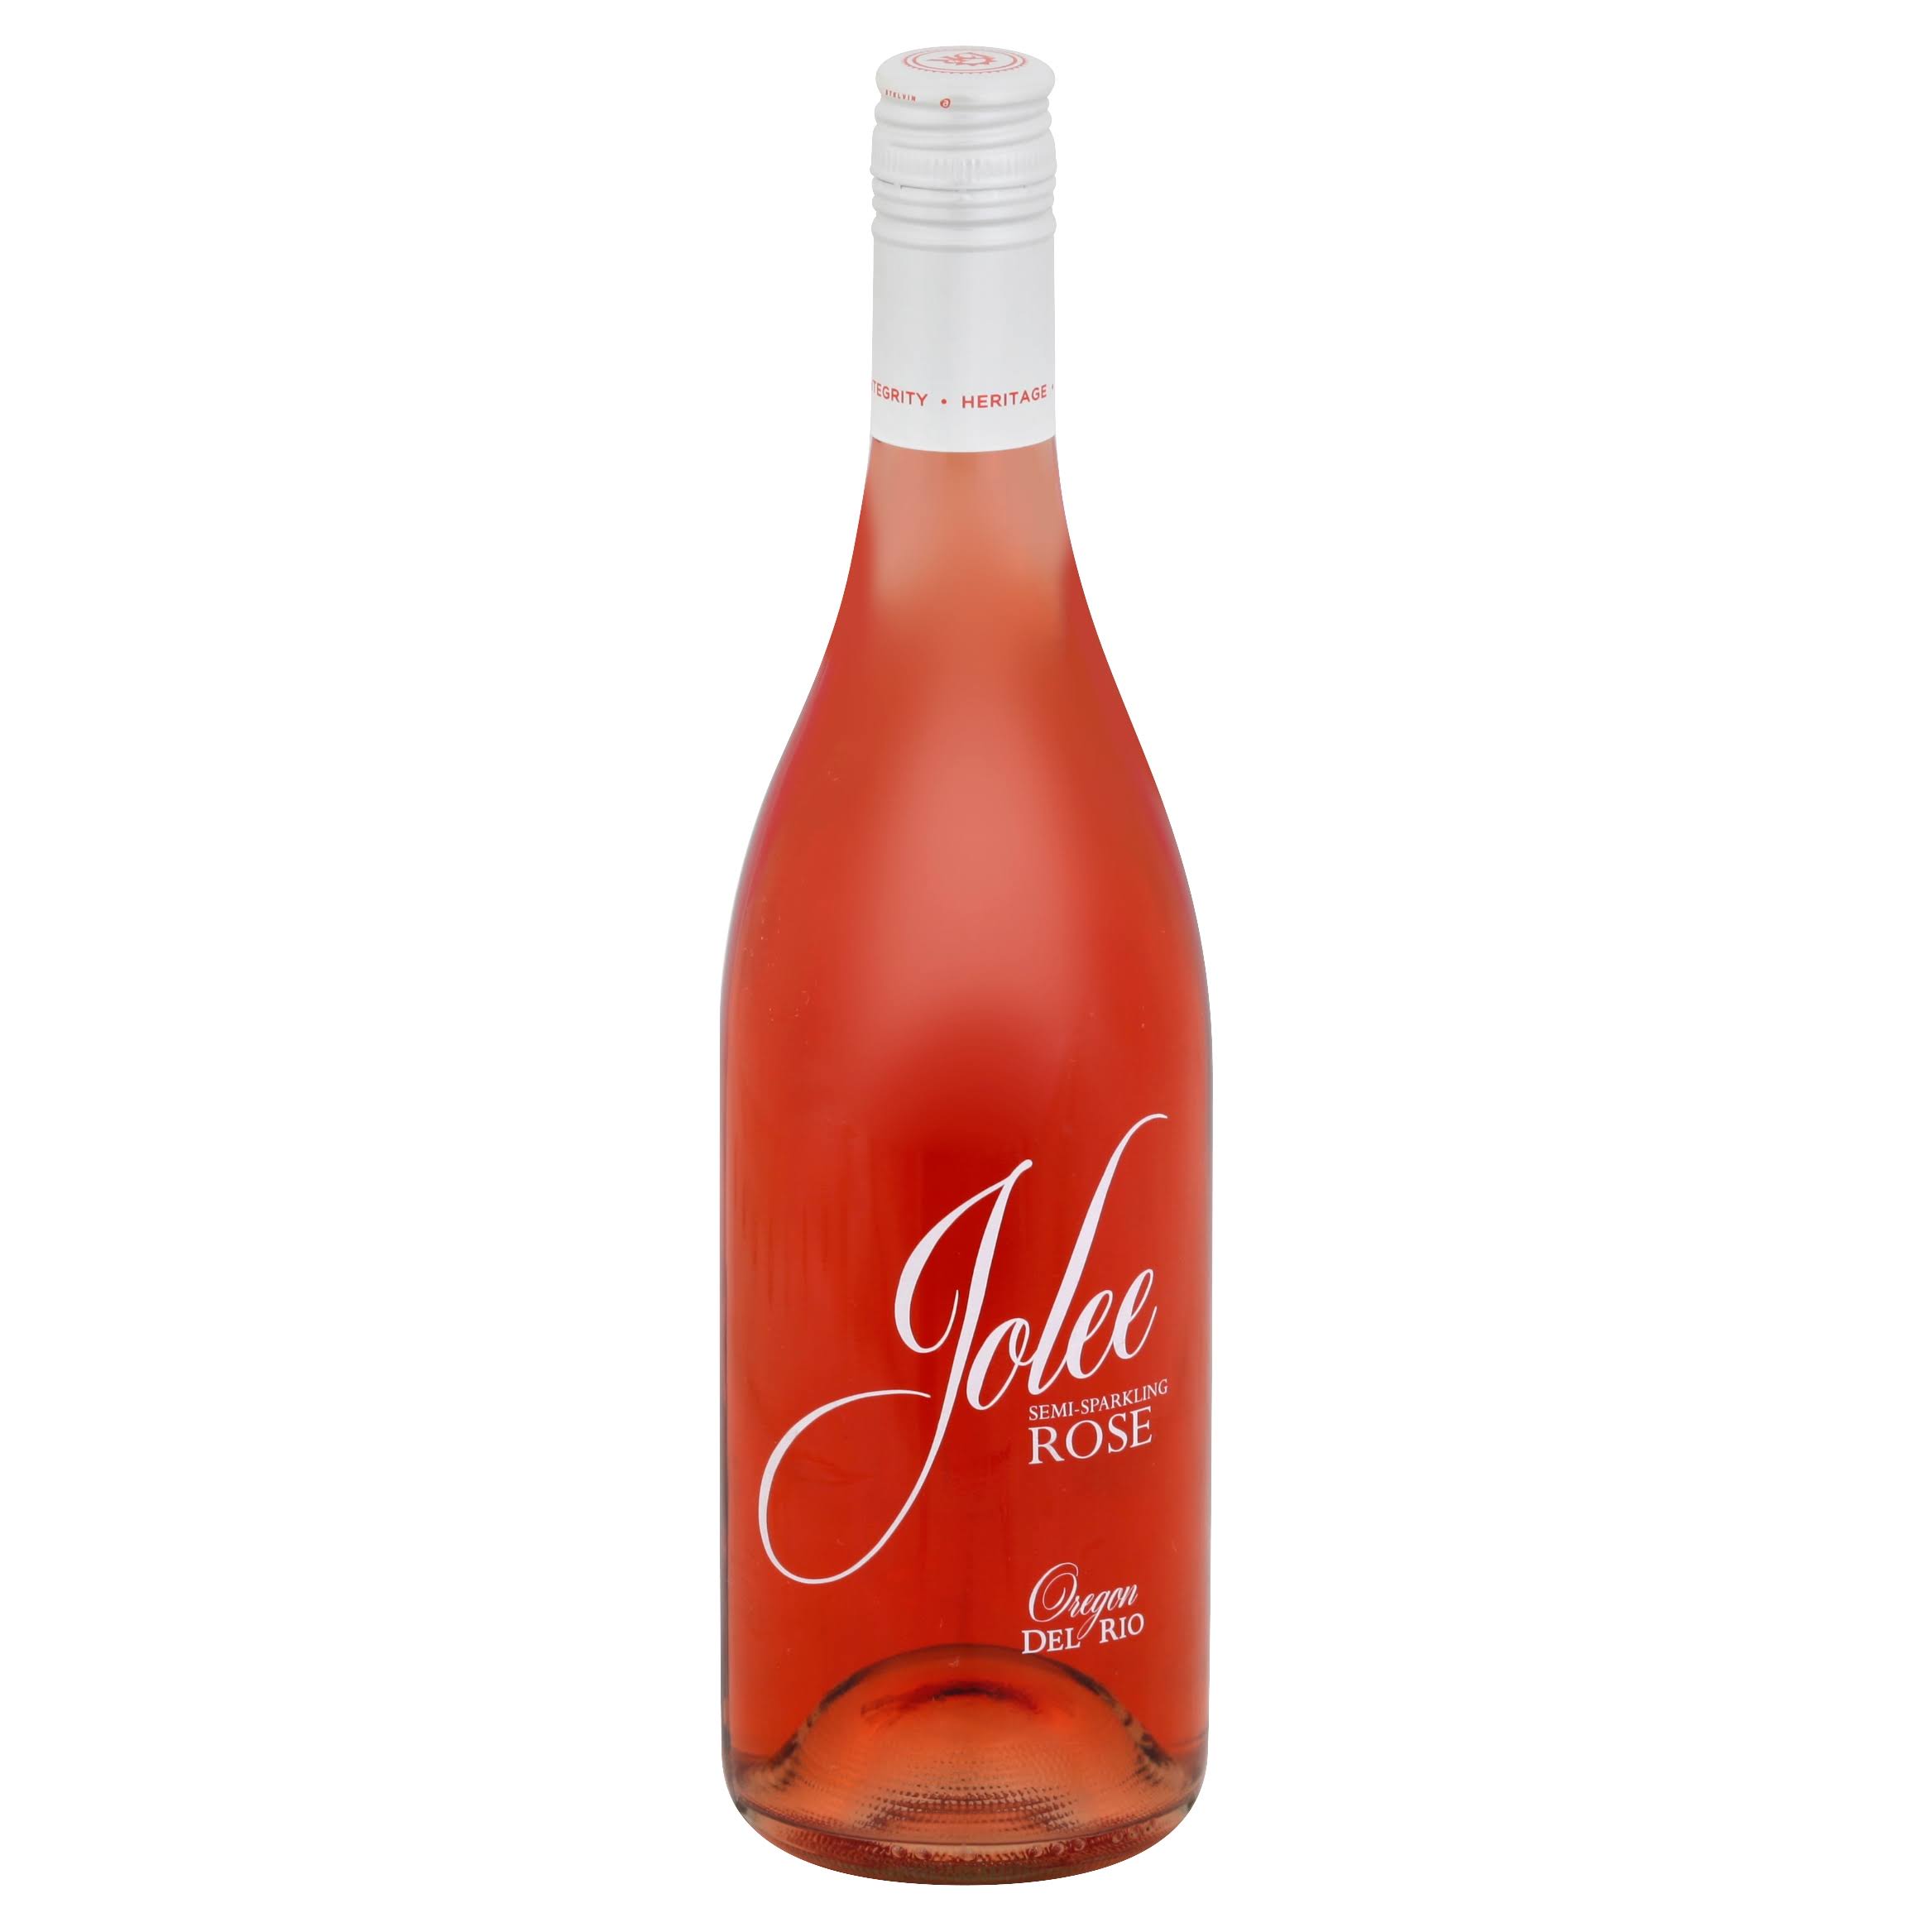 Del Rio Vineyards Rose Jolee, Rogue Valley (Vintage Varies) - 750 ml bottle